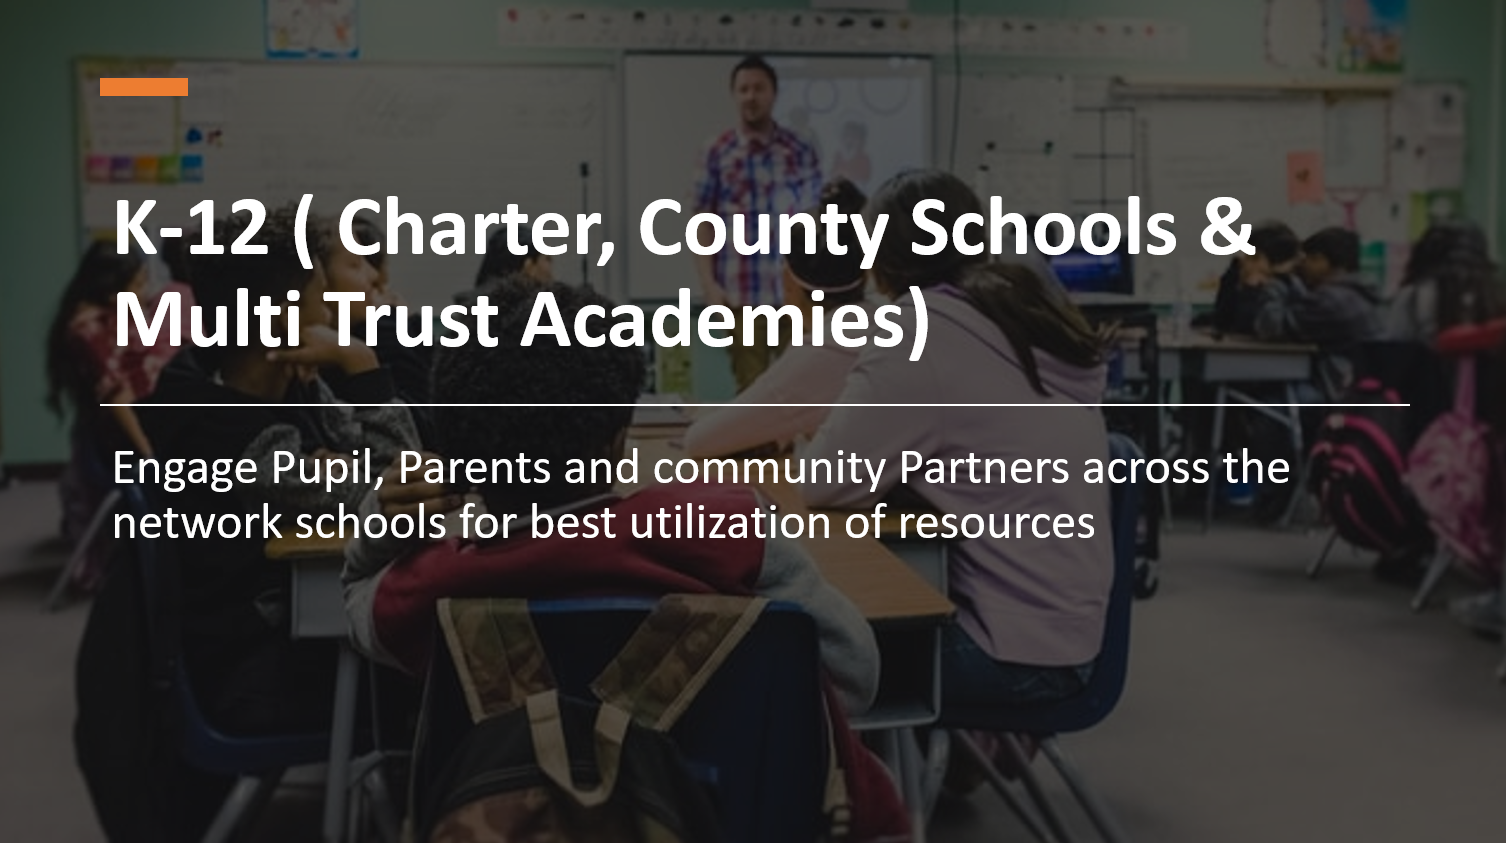 K-12, Charter, County Schools & Multi Trust Academies